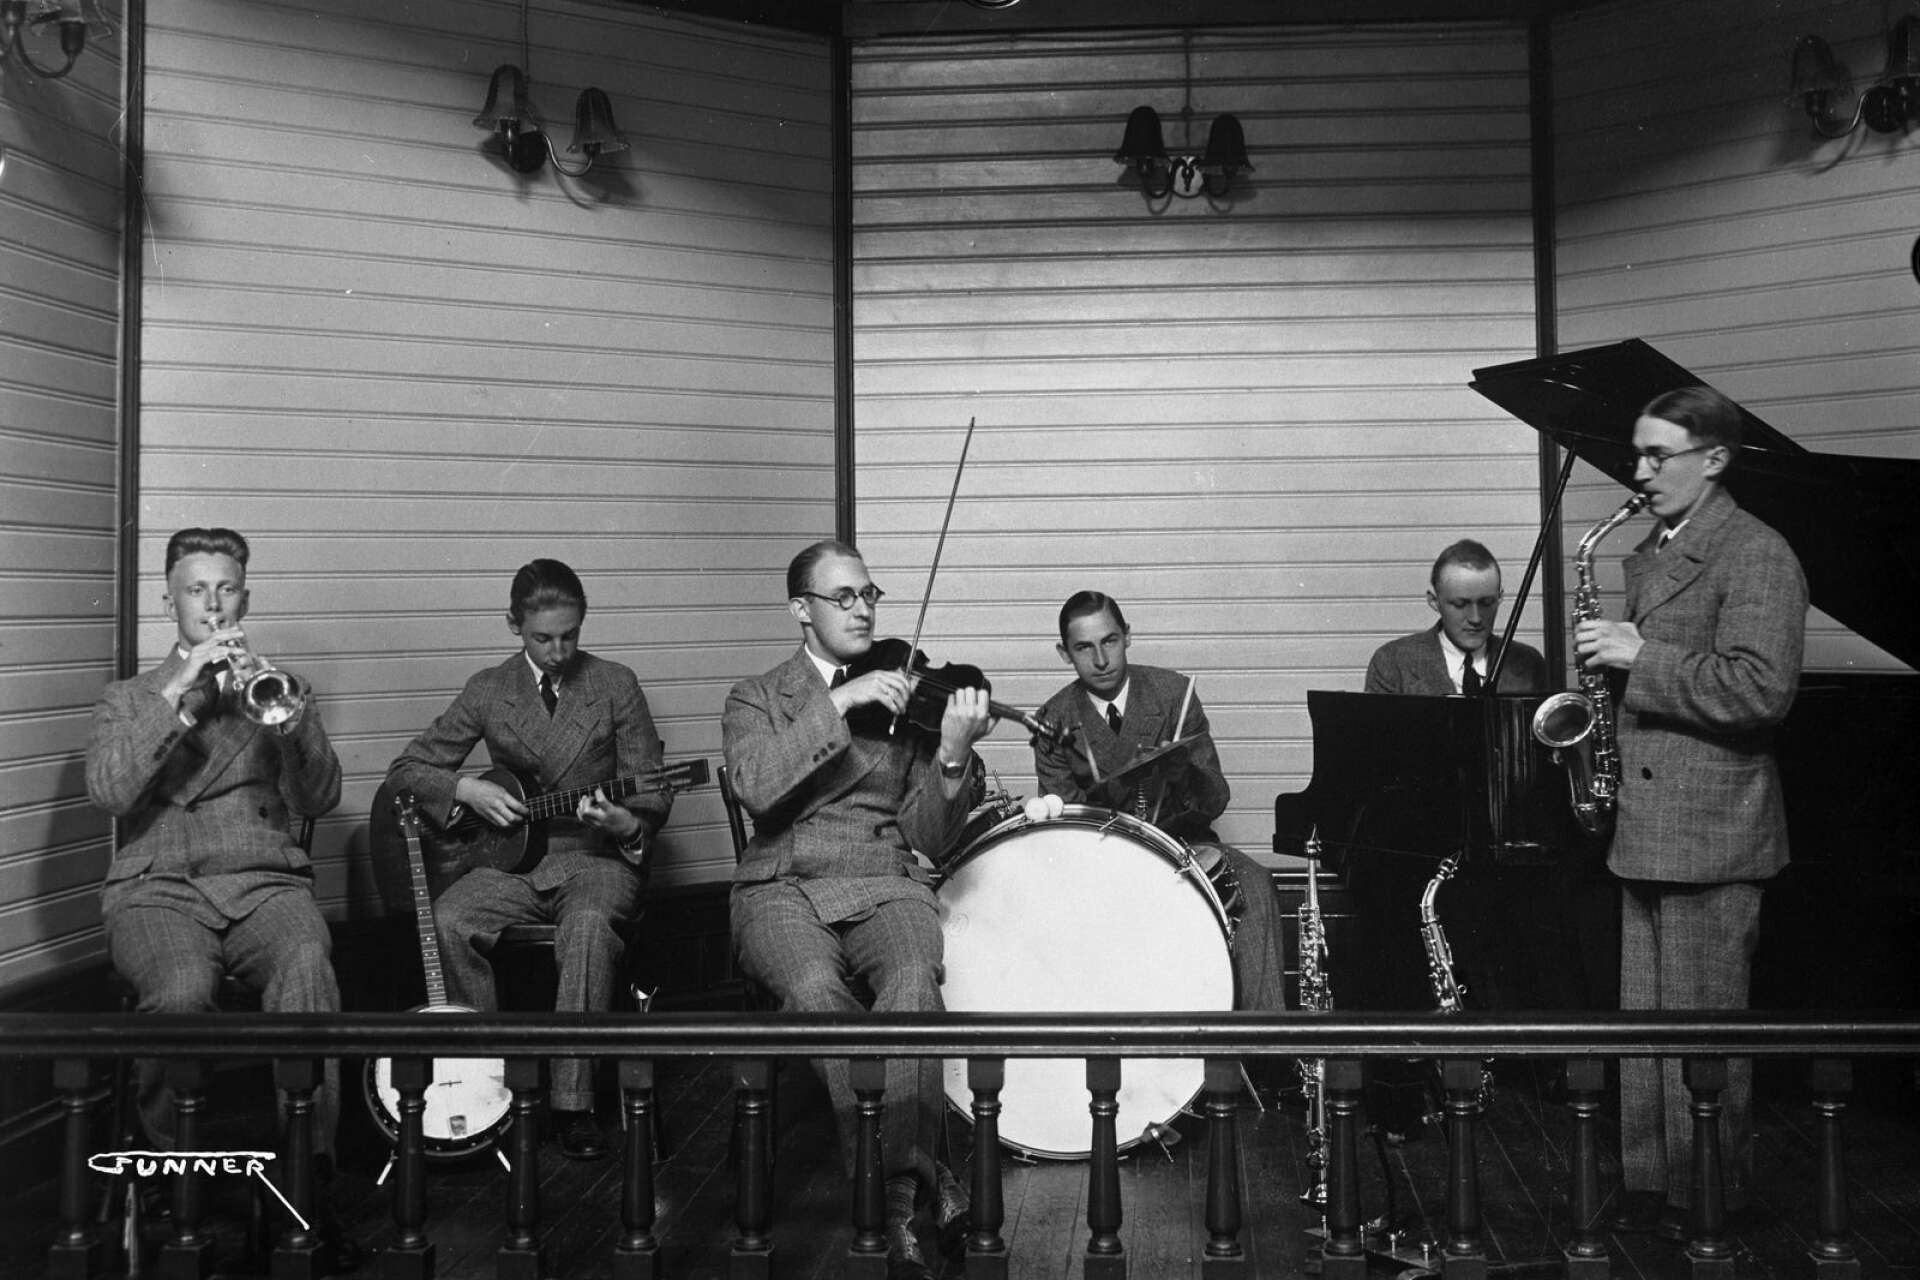 The Melody Men hette denna samling musiker som uppträdde med trumpet, gitarr, fiol, trummor, piano och saxofon. bilden är tagen år 1931.